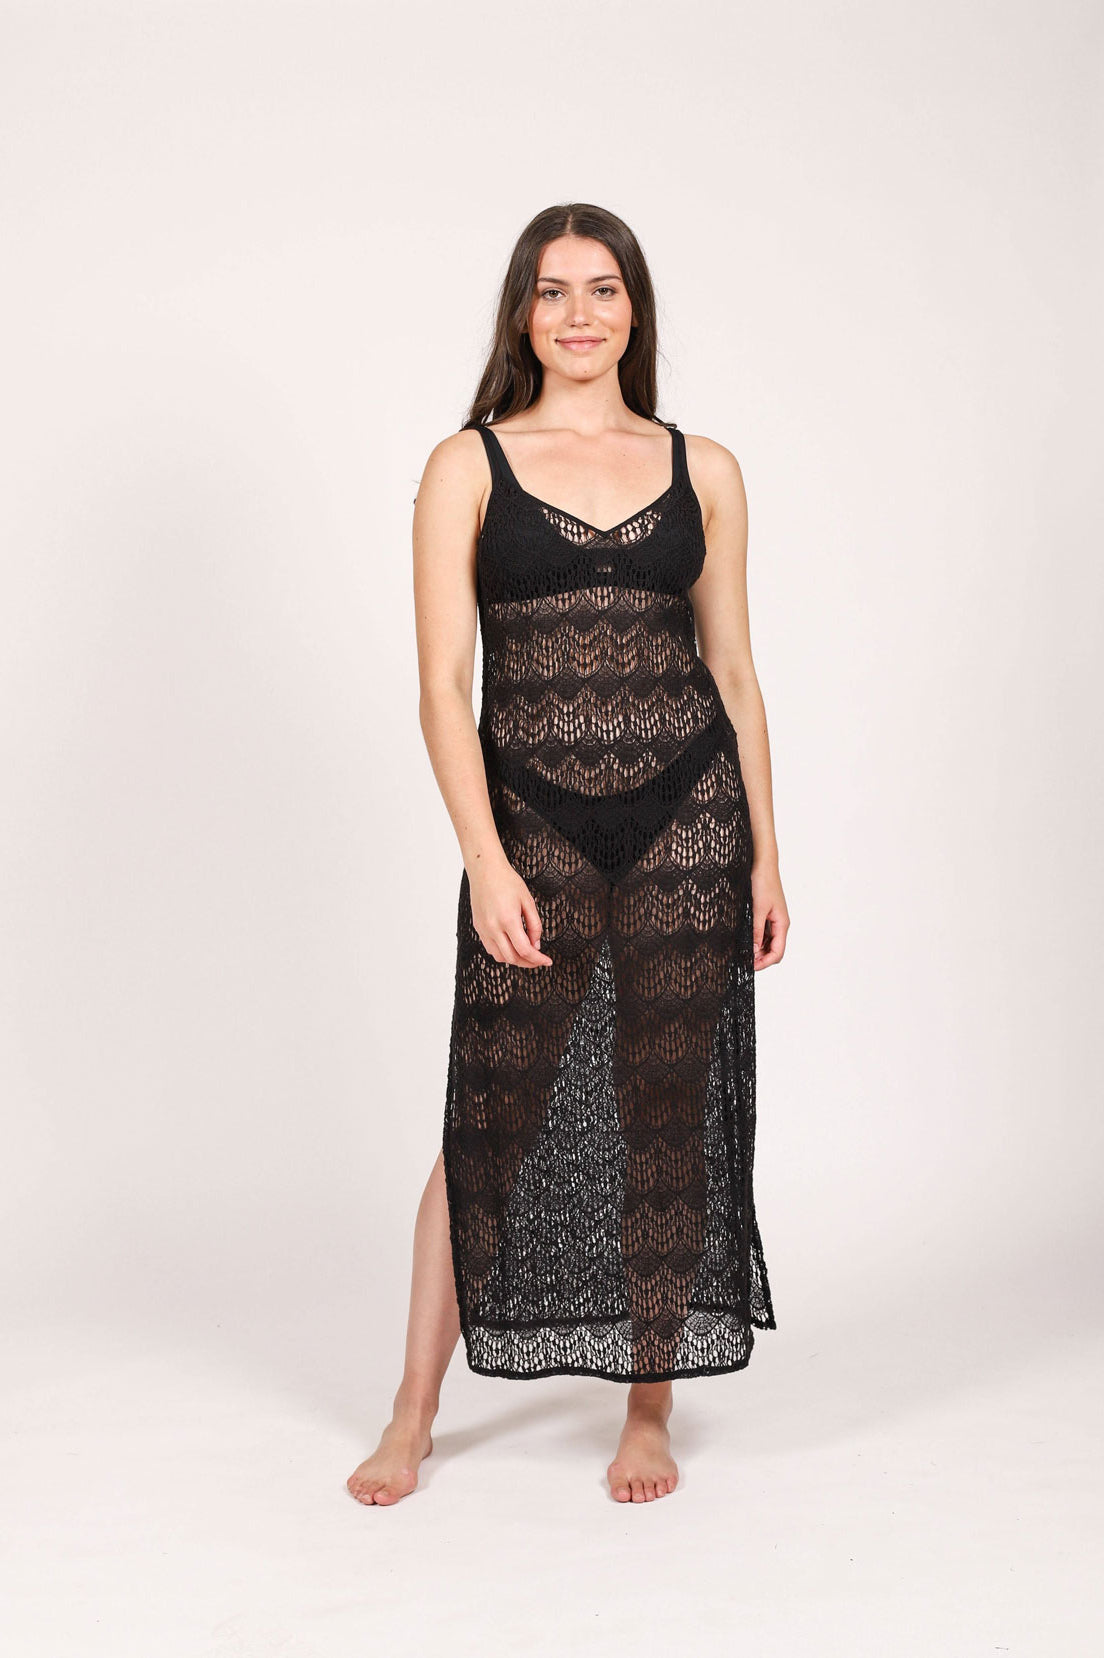 Slit sheer mesh dress, Koy Resort, Shop the beach dresses for women